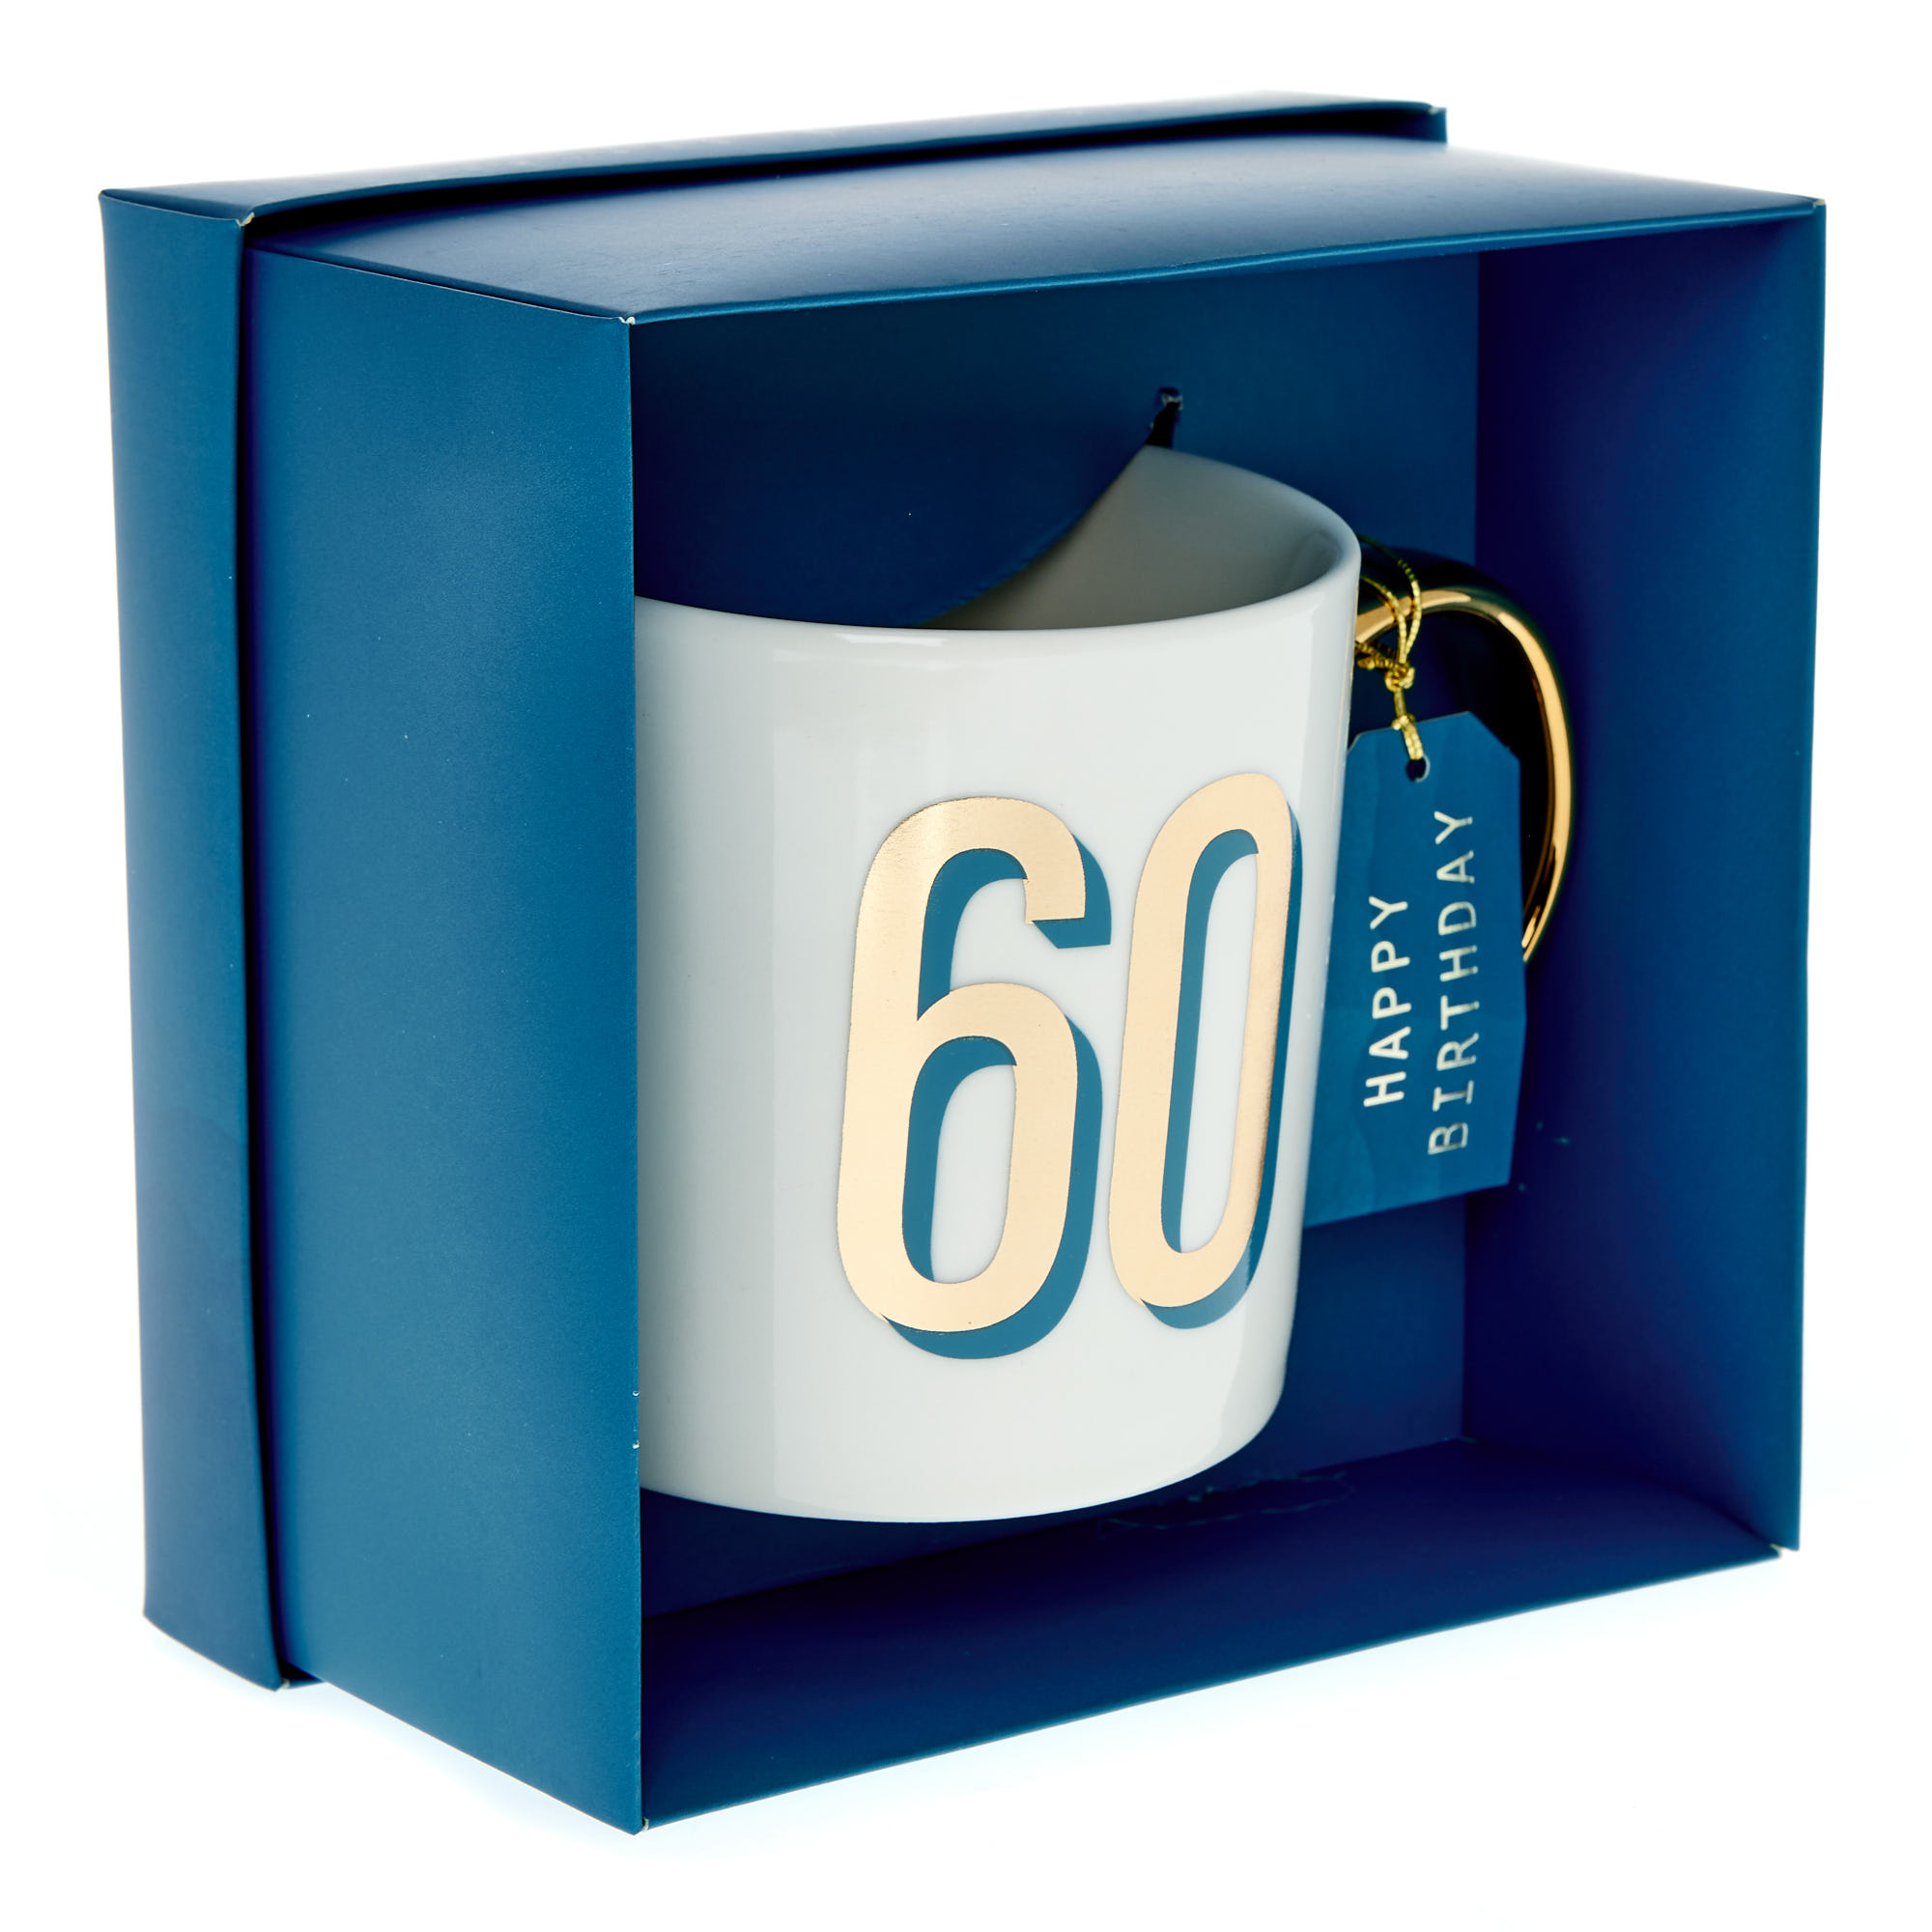 Blue & Gold 60th Birthday Mug